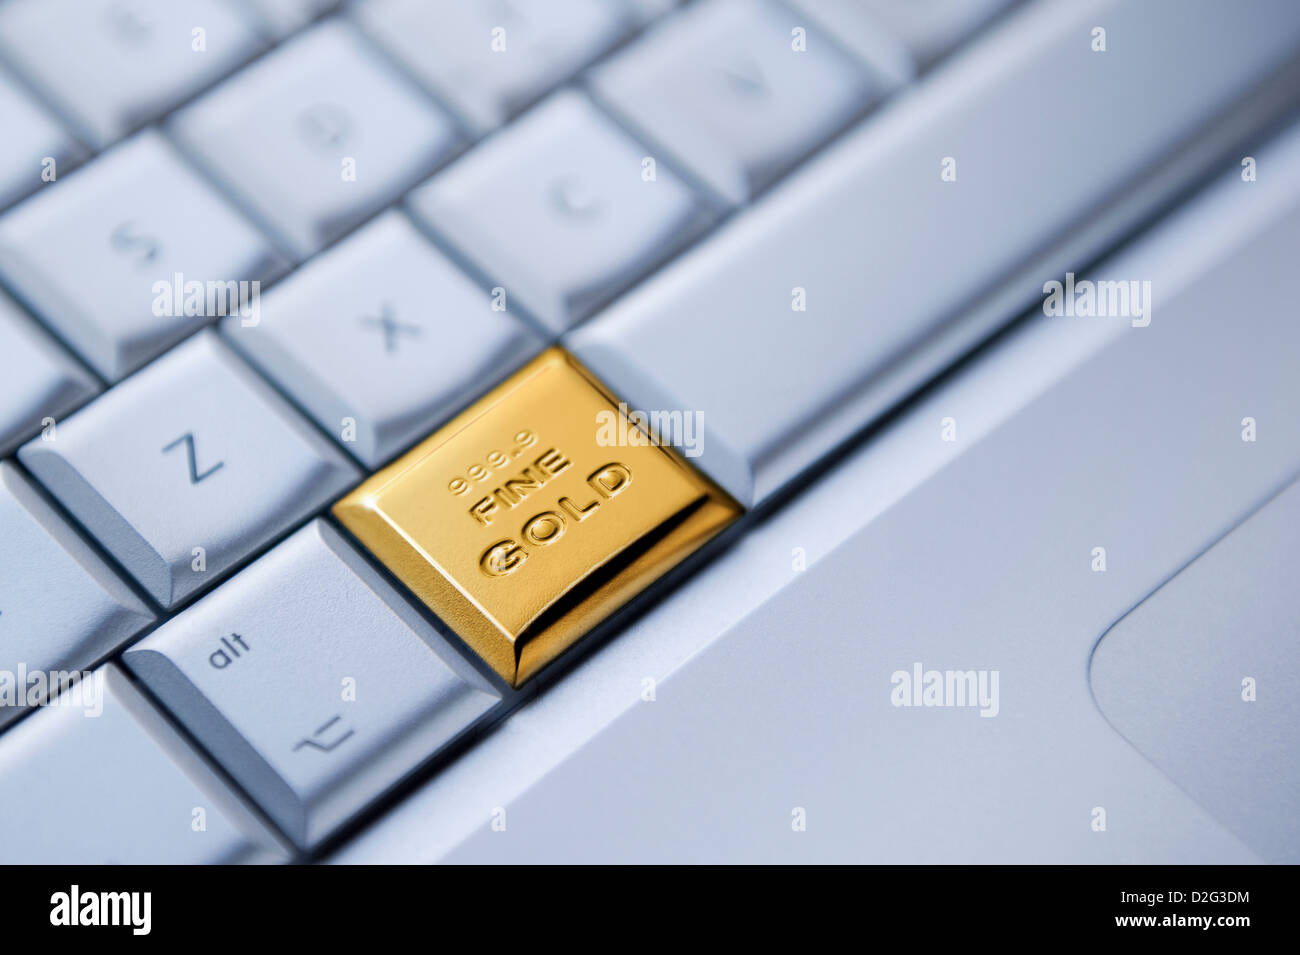 Detalle de un teclado con una tecla como una barra de oro macizo - online business / enriquecimiento / oro / existencias comerciales concepto Foto de stock